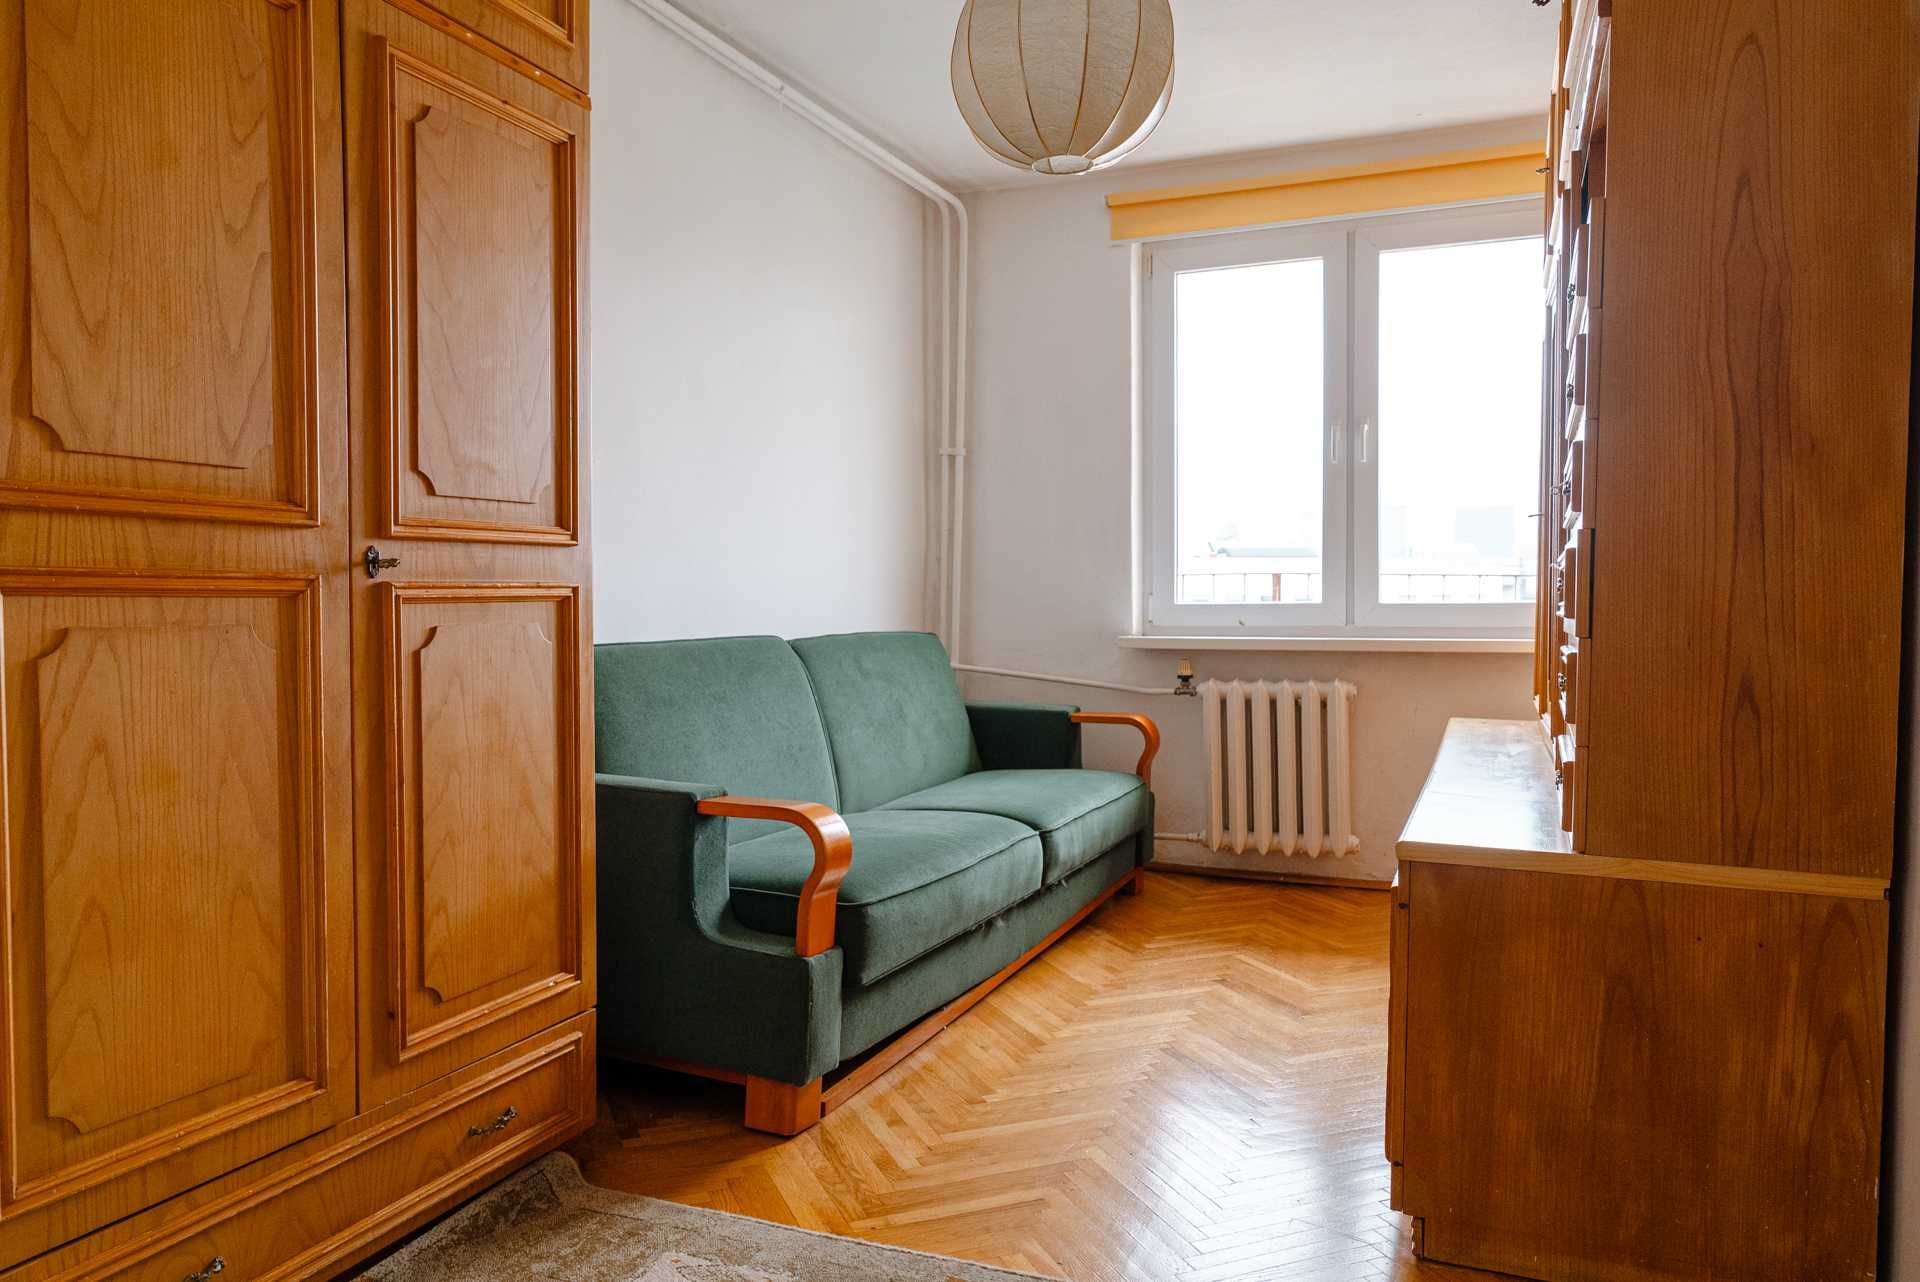 Dwupokojowe mieszkanie na Śródmieściu/Tworoom apartment in Śródmieście